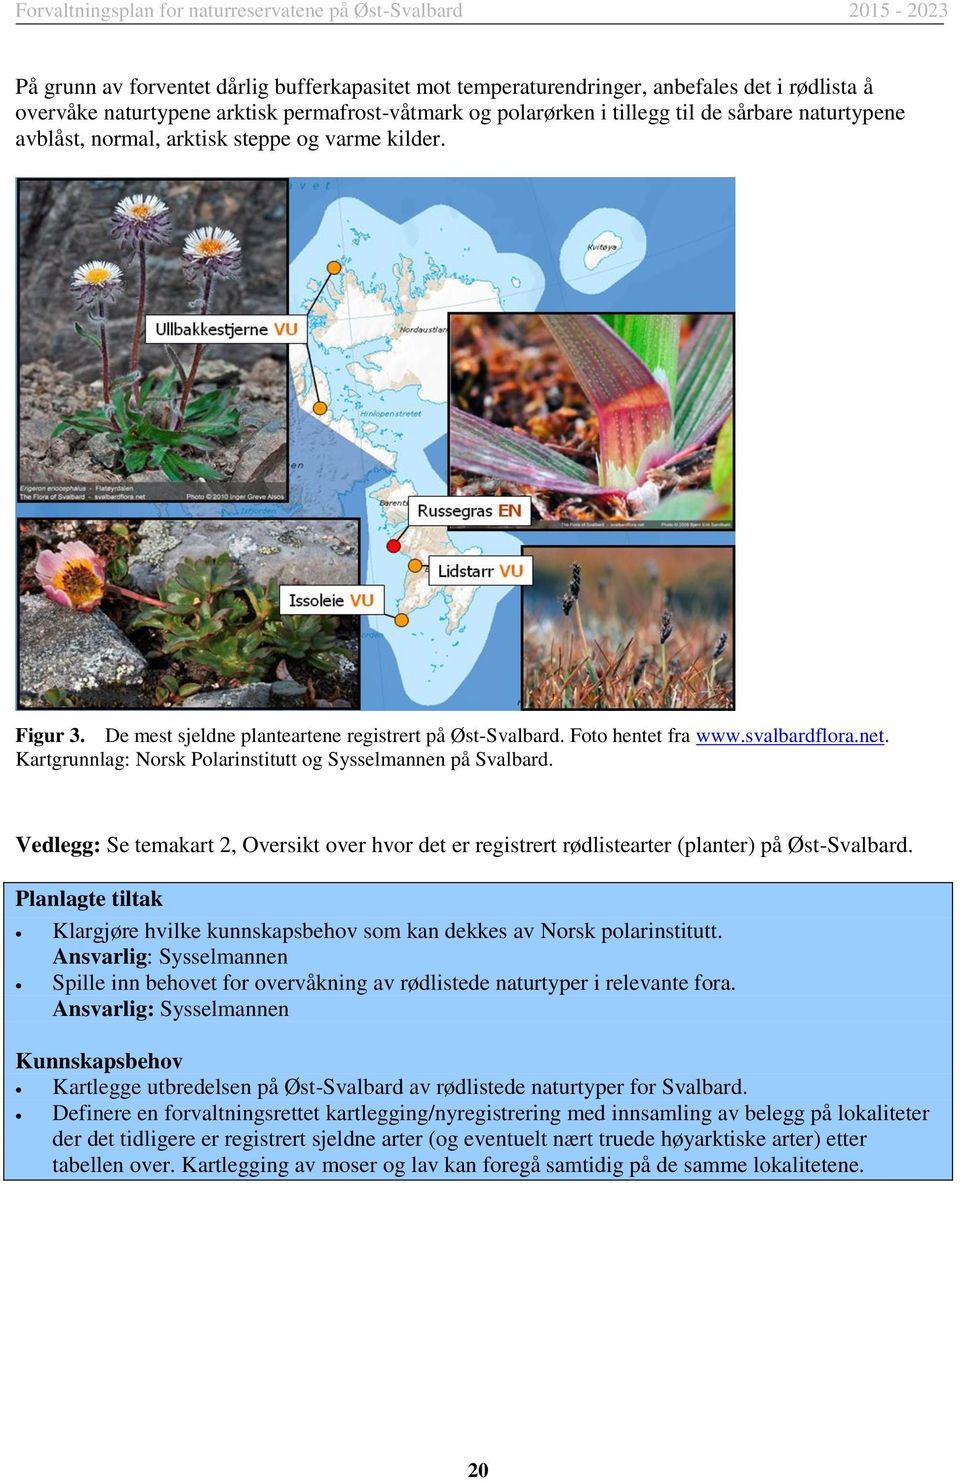 Kartgrunnlag: Norsk Polarinstitutt og Sysselmannen på Svalbard. Vedlegg: Se temakart 2, Oversikt over hvor det er registrert rødlistearter (planter) på Øst-Svalbard.